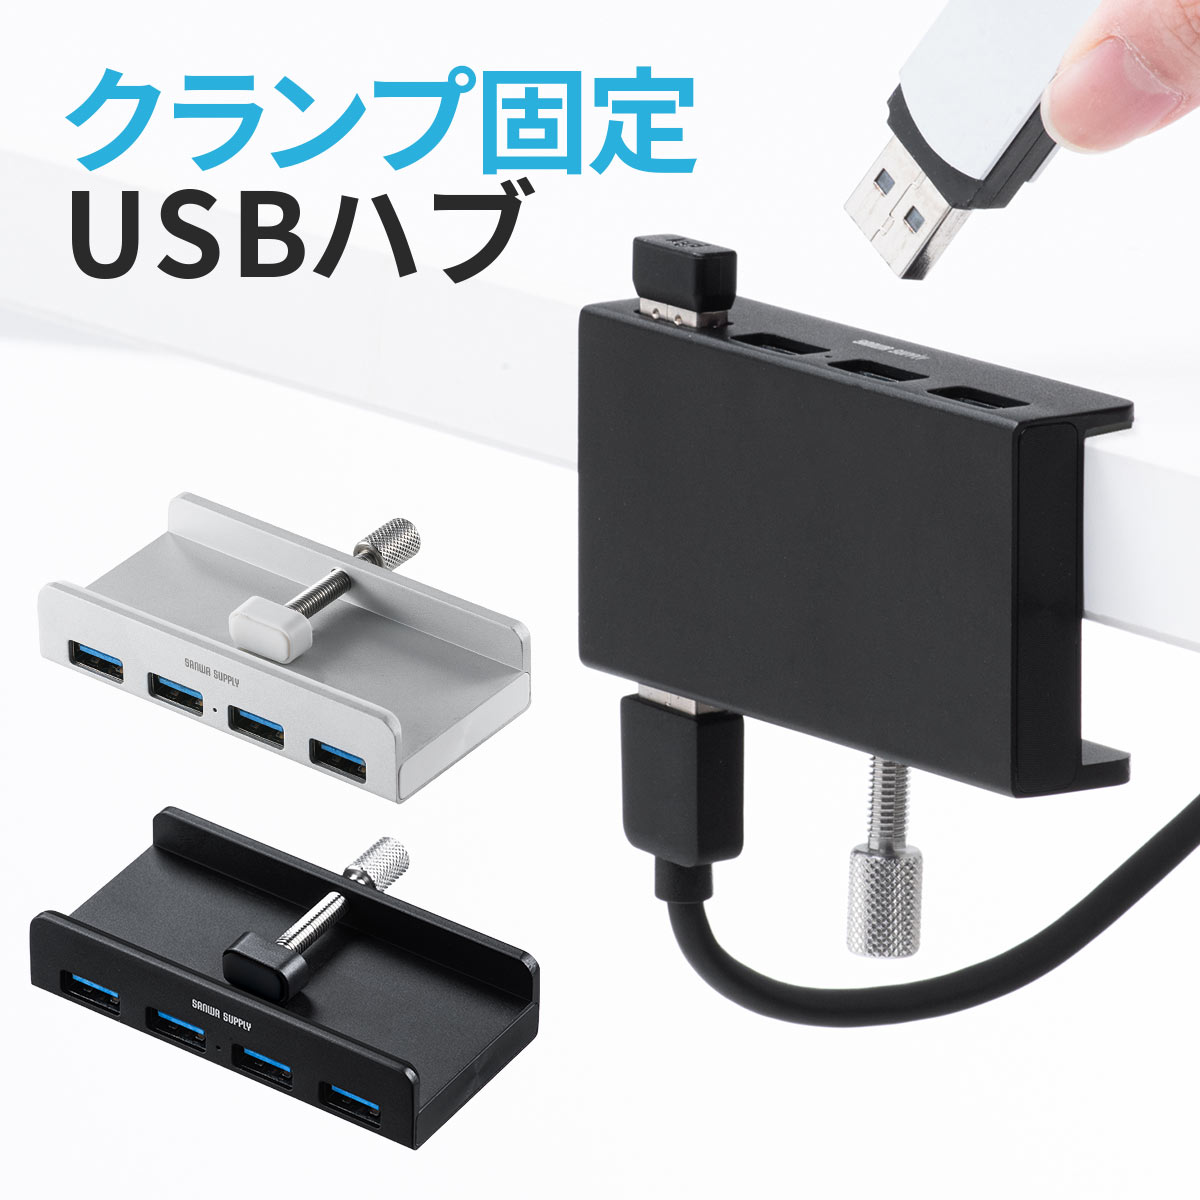 USBnu Nv 4|[g fXN Œ Nvnu NvUSBnu Nbv USB3.1 3.0 Gen1 oXp[ P[u1.5m RpNg ȃXy[X